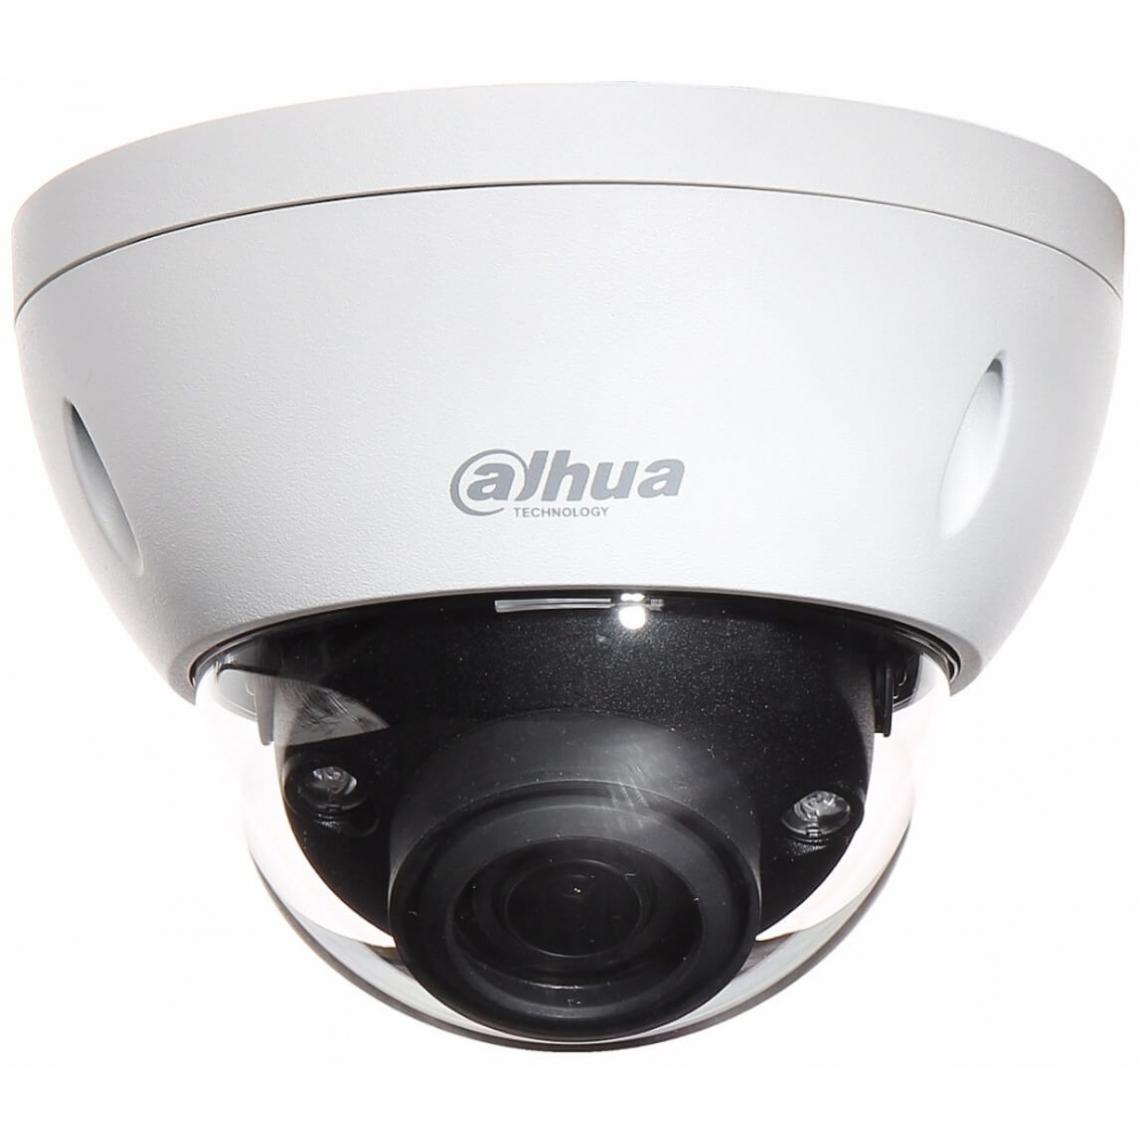 Dahua - Dahua - DH-IPC-HDBW81230E-Z - Caméra de surveillance connectée